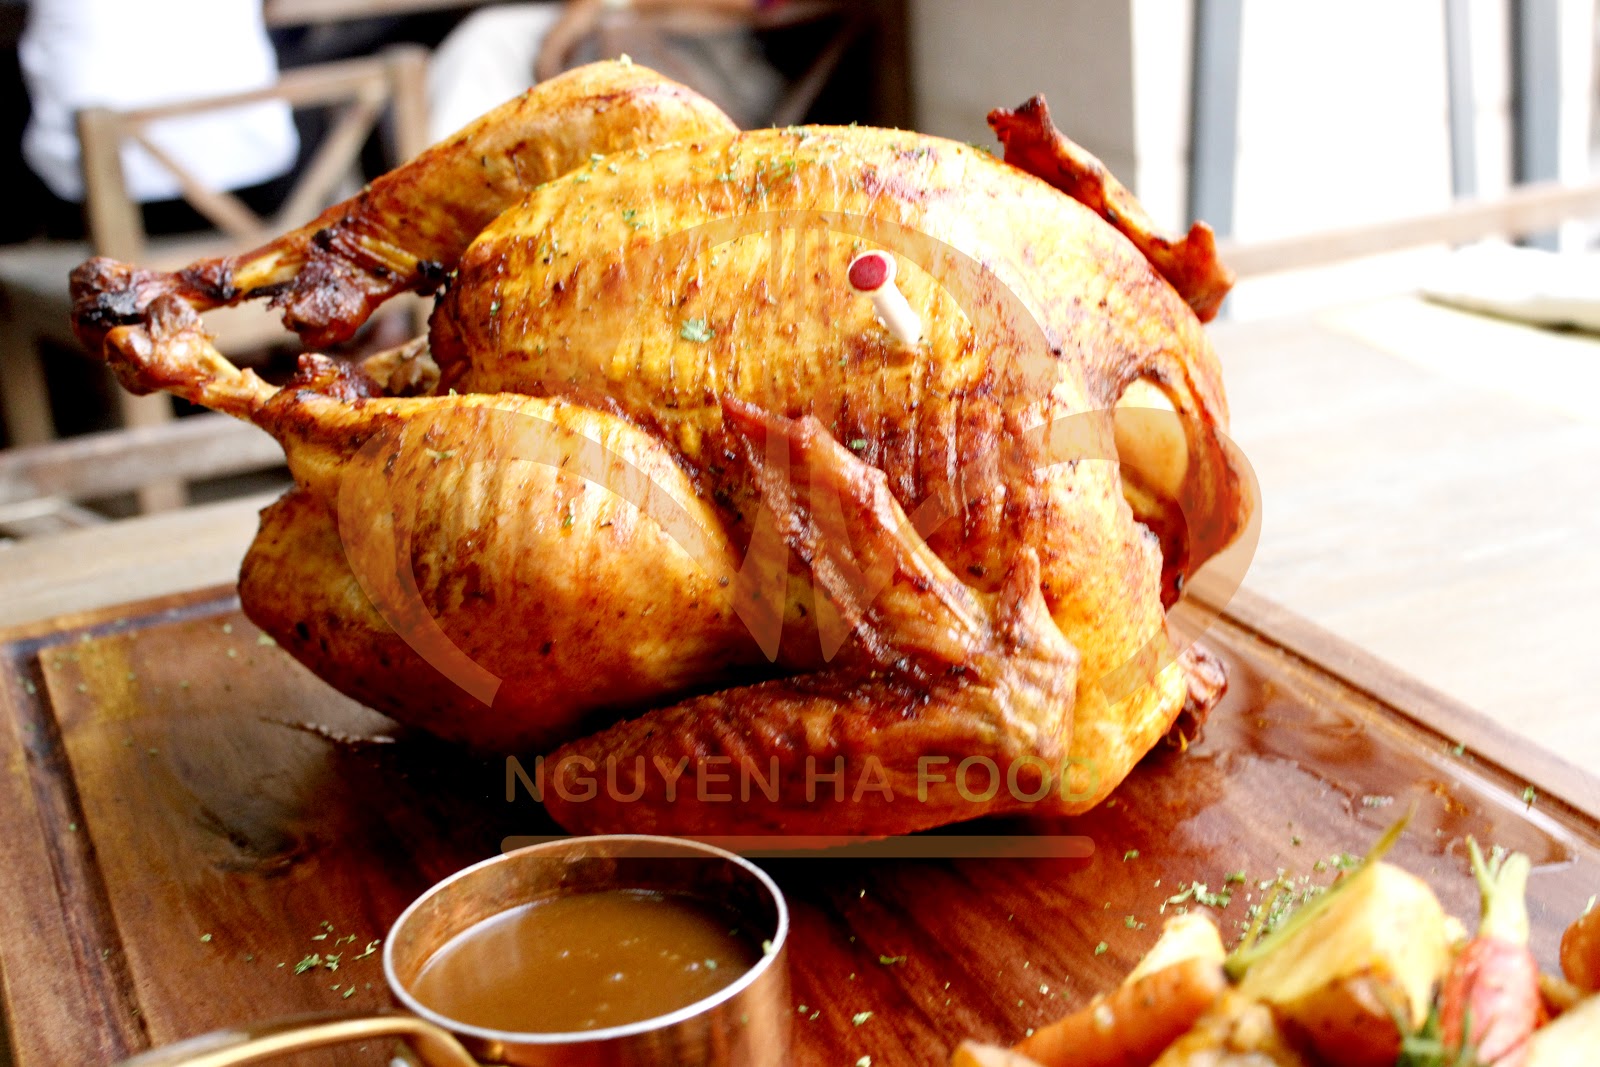 Gà Tây Nhồi Nướng Nipponham - Roasted Whole Turkey With Stuffing 